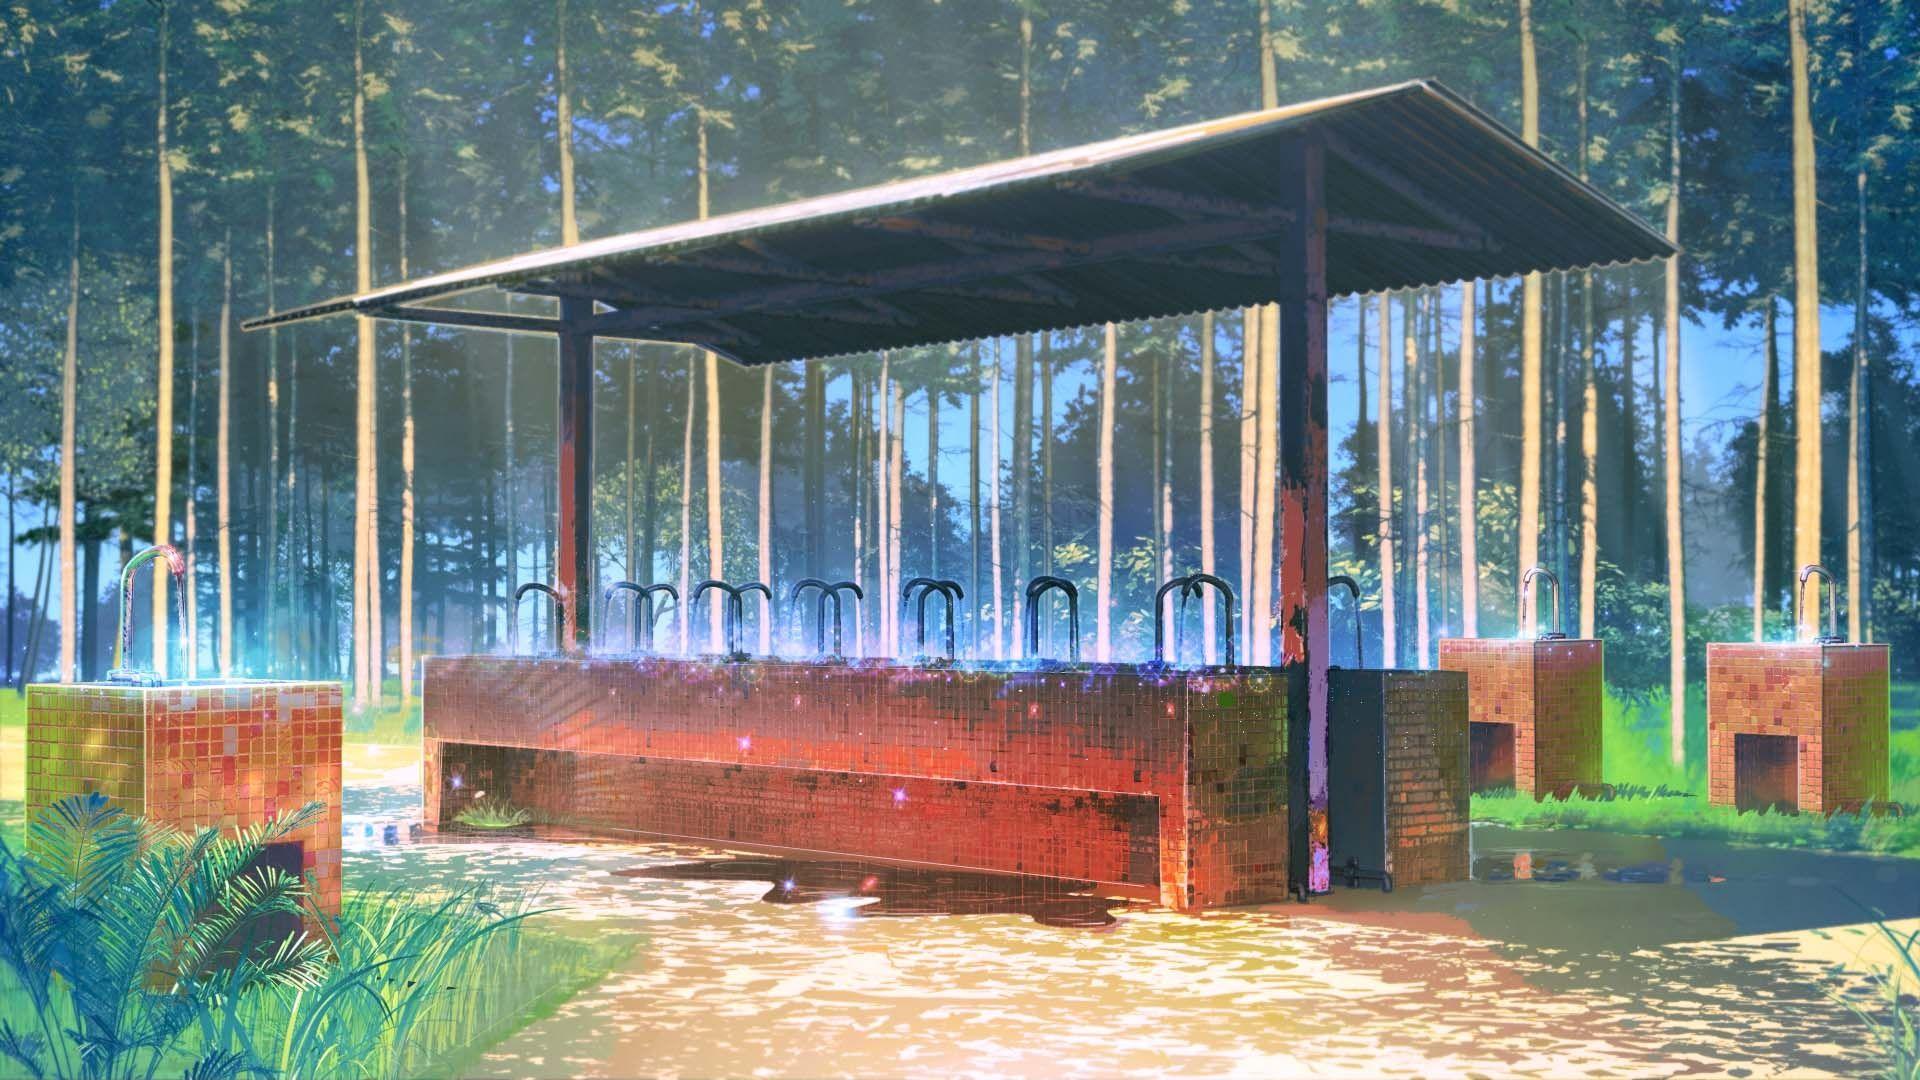 Download 1920x1080 Anime Landscape, School Backyard Wallpaper